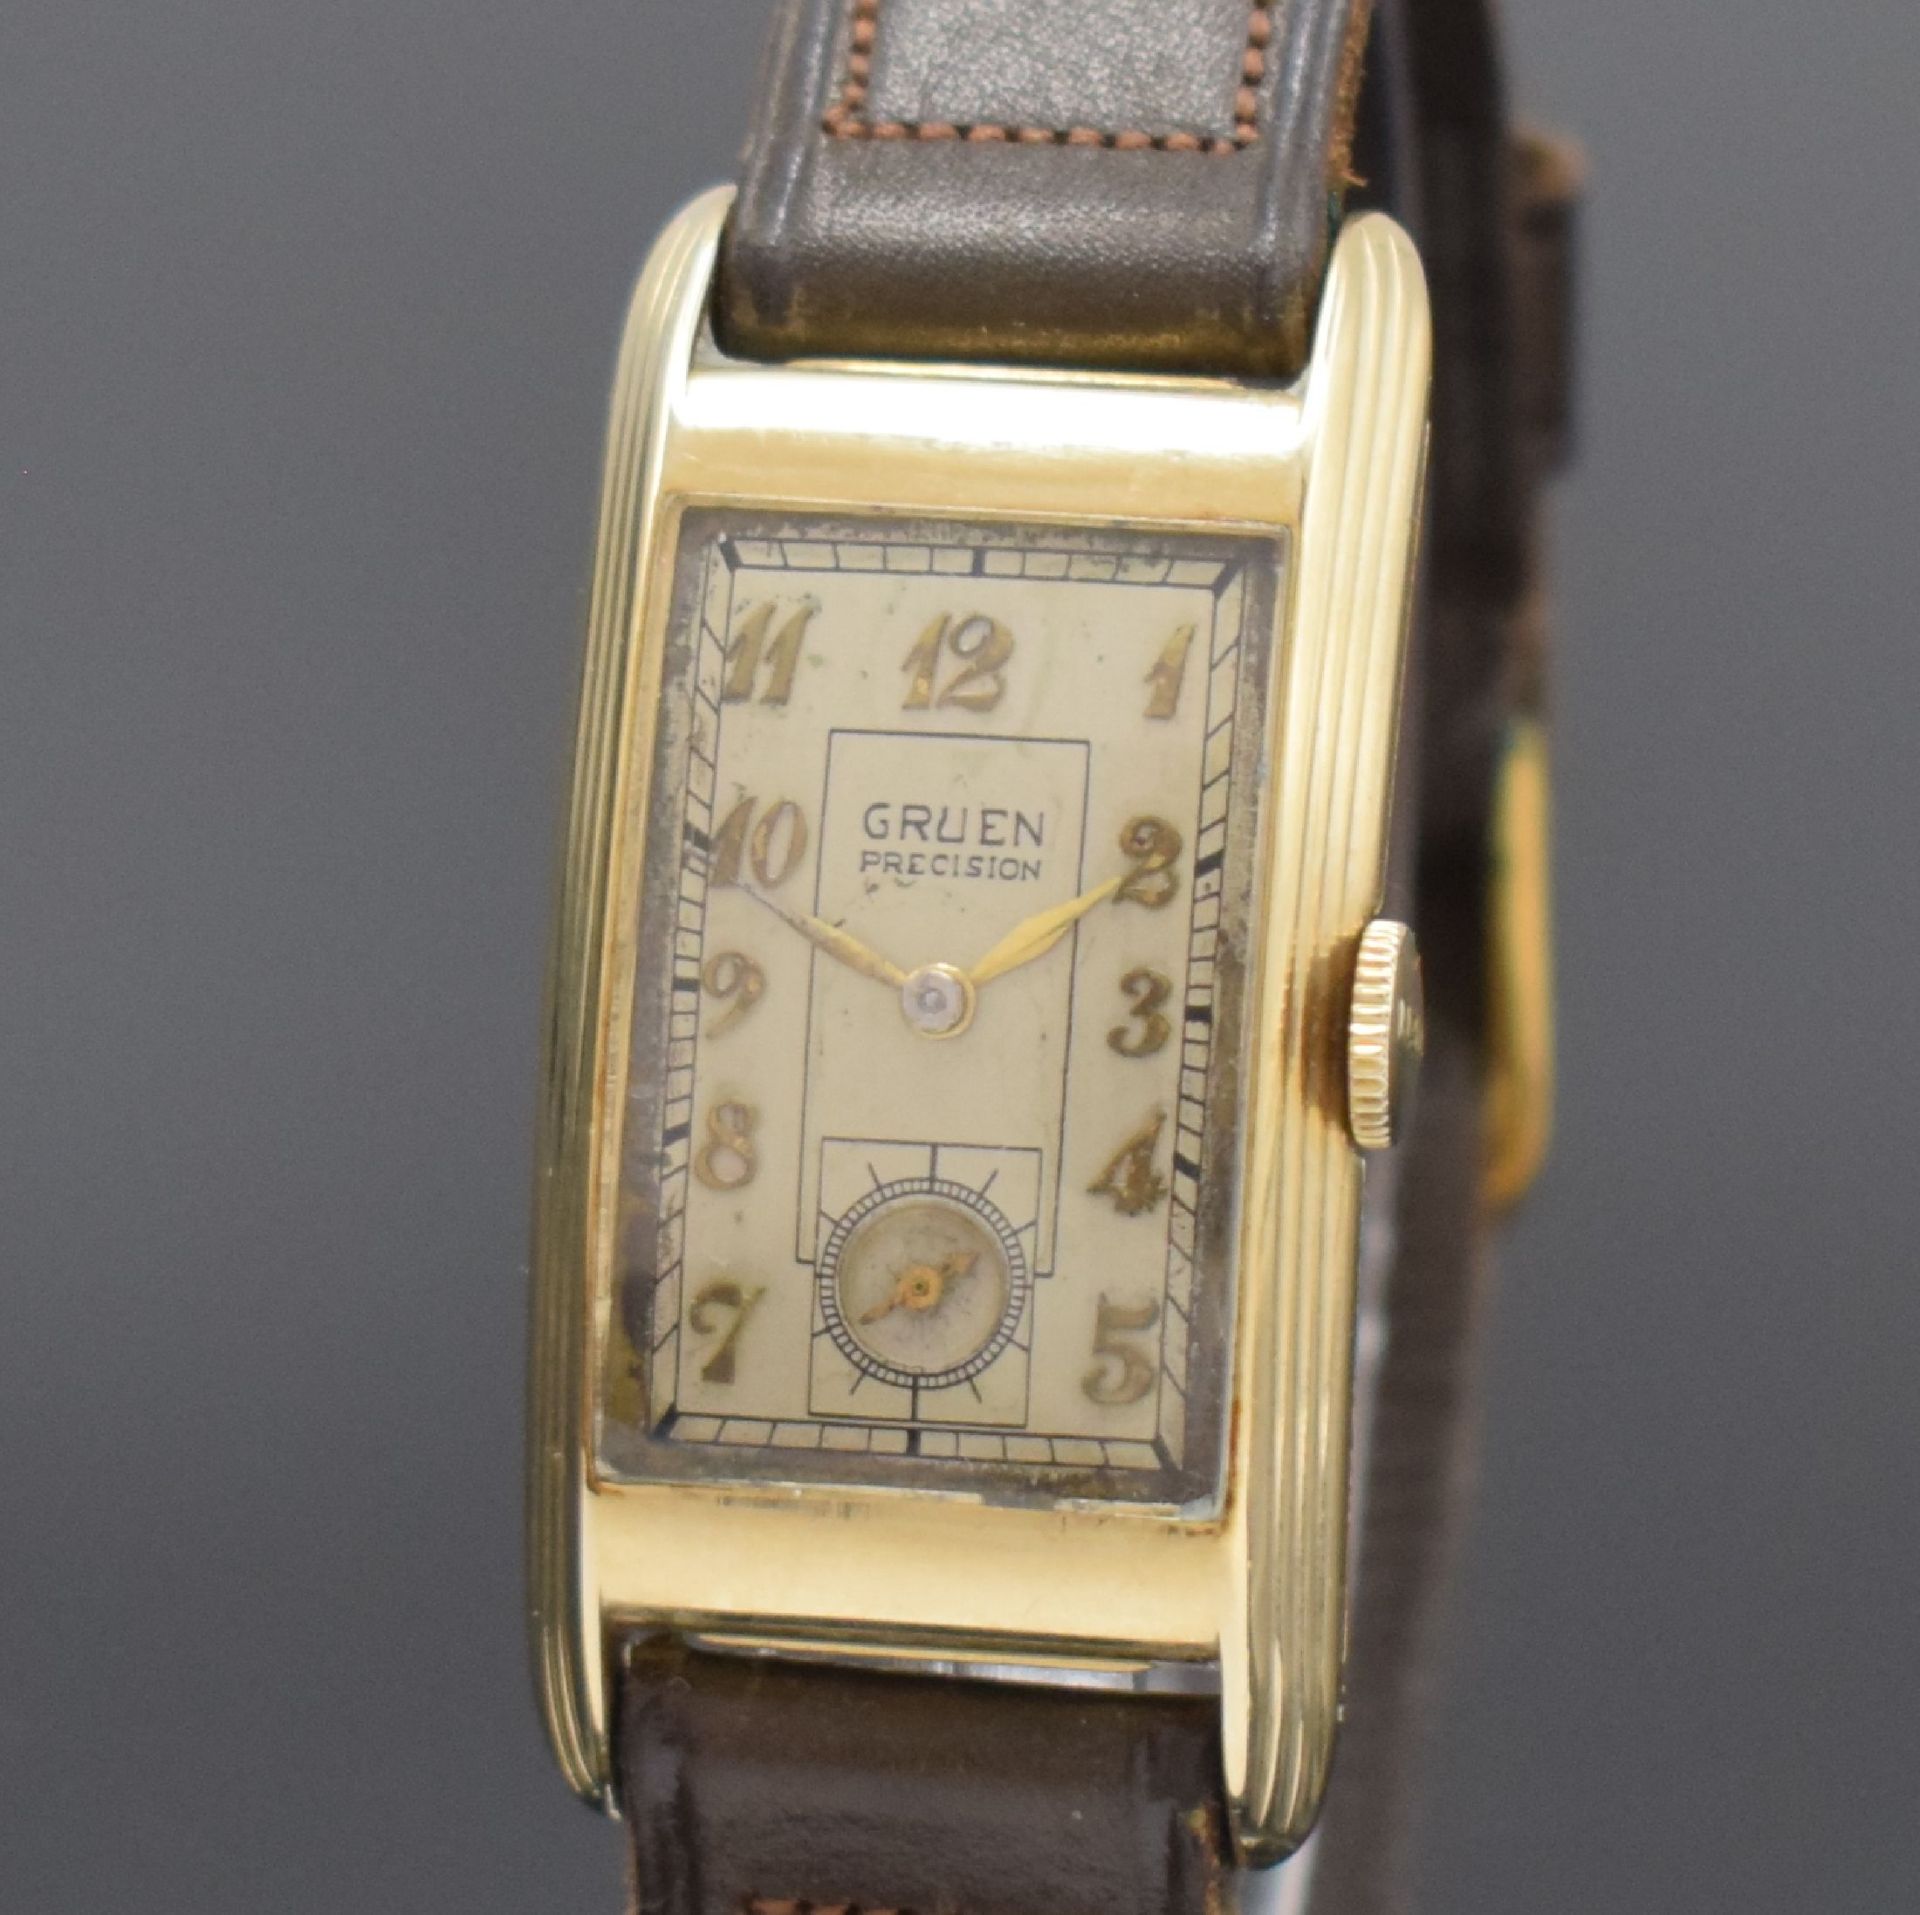 GRUEN Precision rechteckige Armbanduhr in 14k Gelbgold, - Bild 2 aus 6